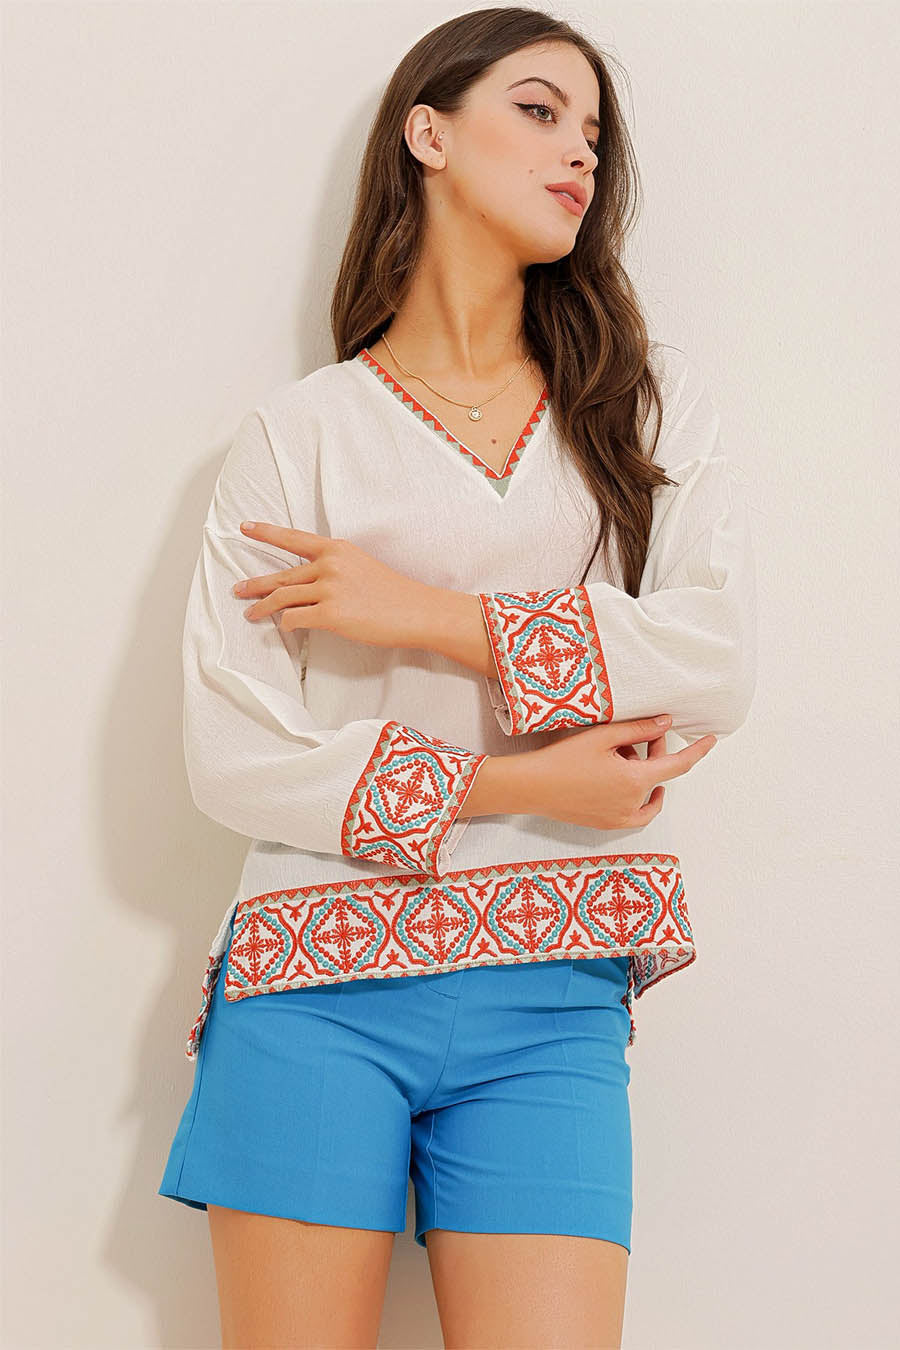 Γυναικεία μπλούζα Kaesha, Λευκό 4